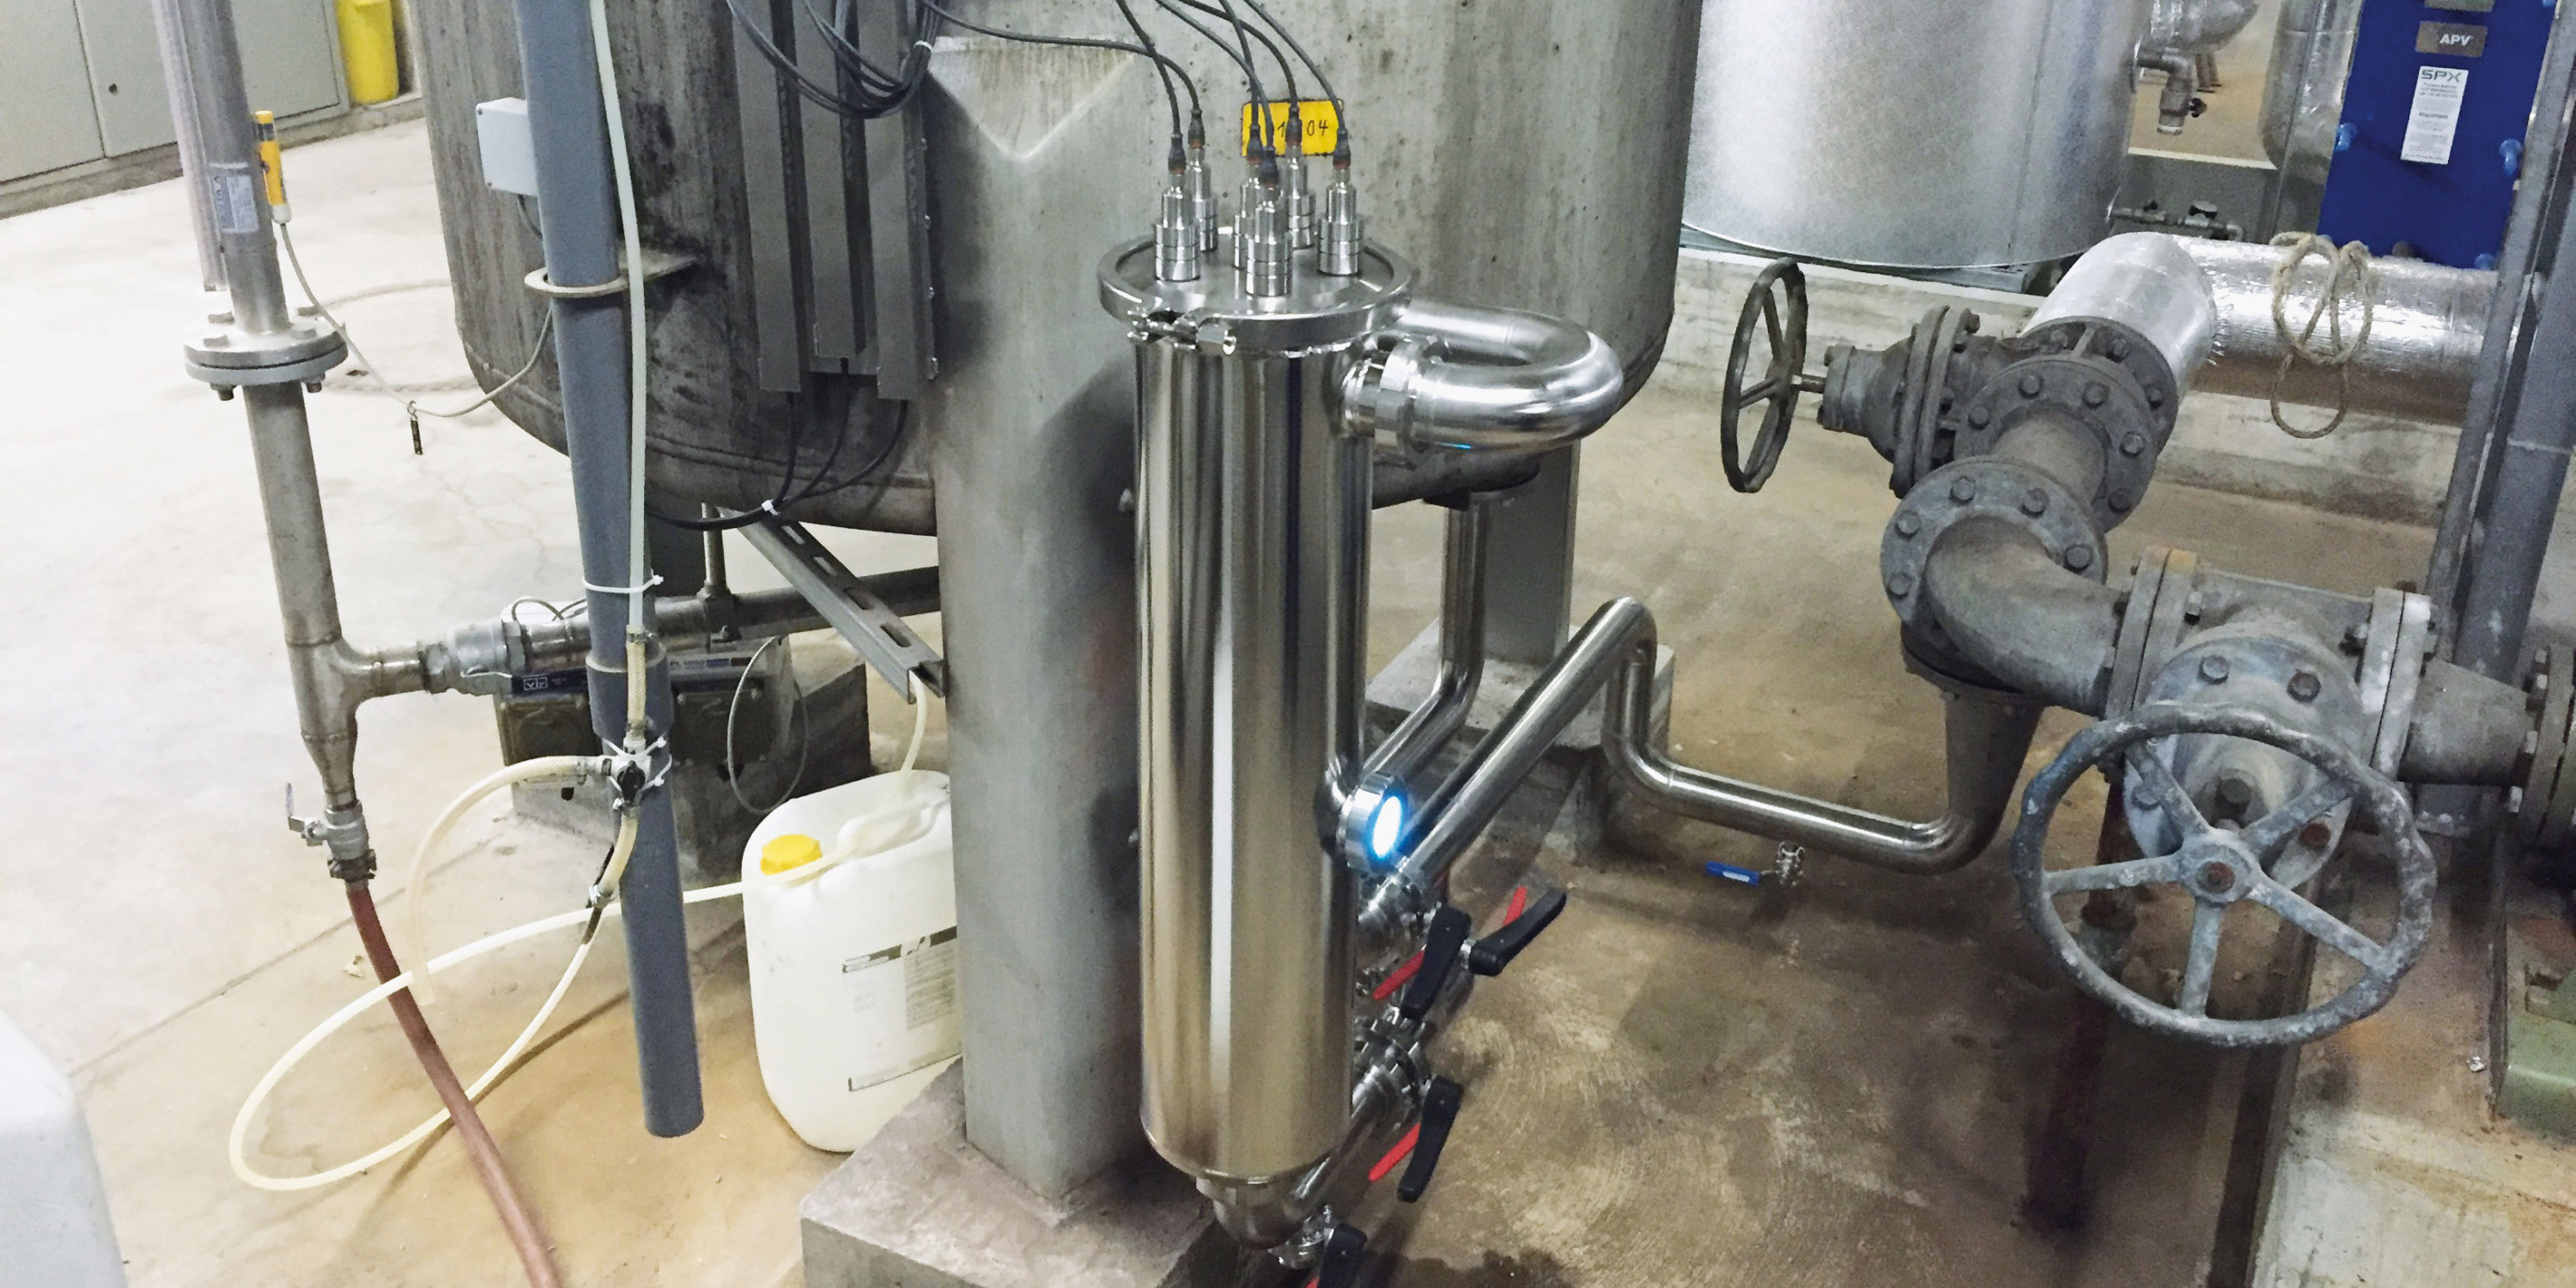 UVC Wasserentkeimung: Ein AQD-ST Edelstahl-Durchflussgerät sorgt mit UVC-Bestrahlung für Keimfreiheit in Flüssigkeiten